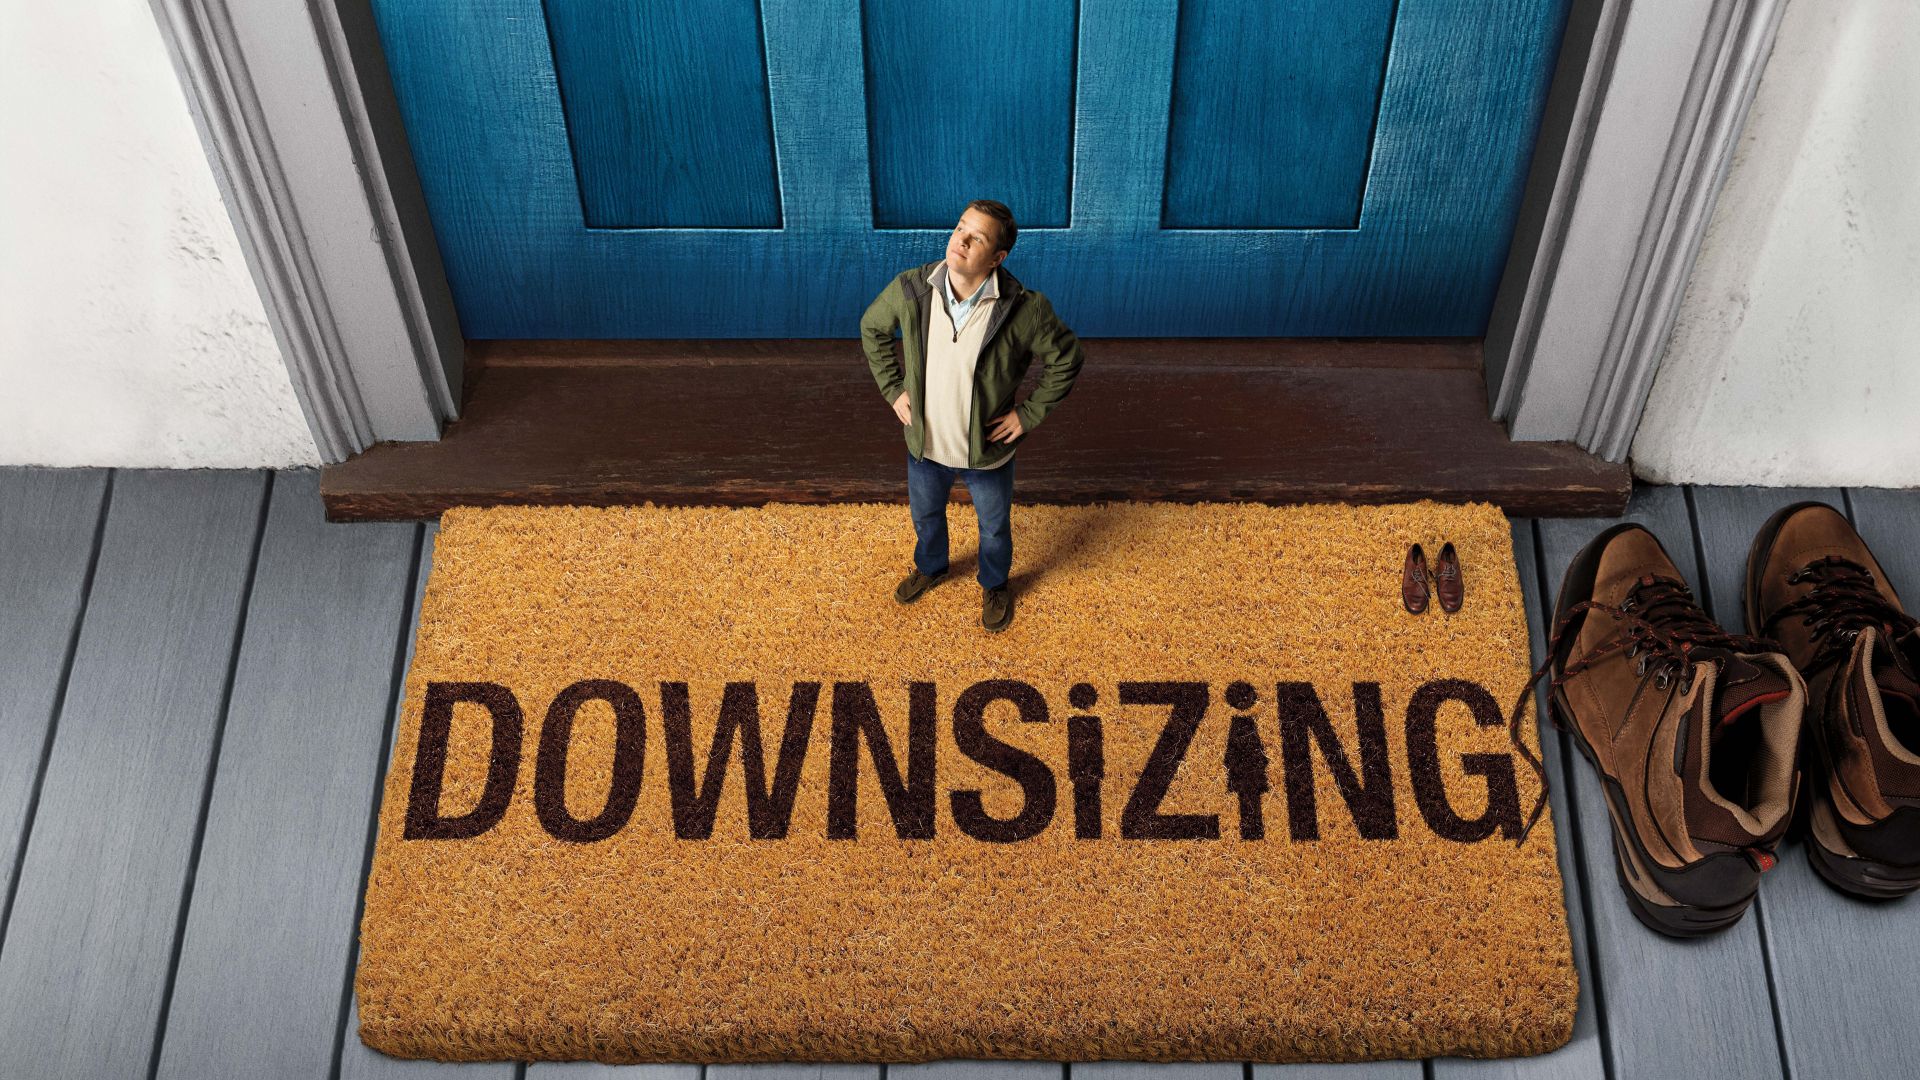 Downsizing, Matt Damon, 5k (horizontal)